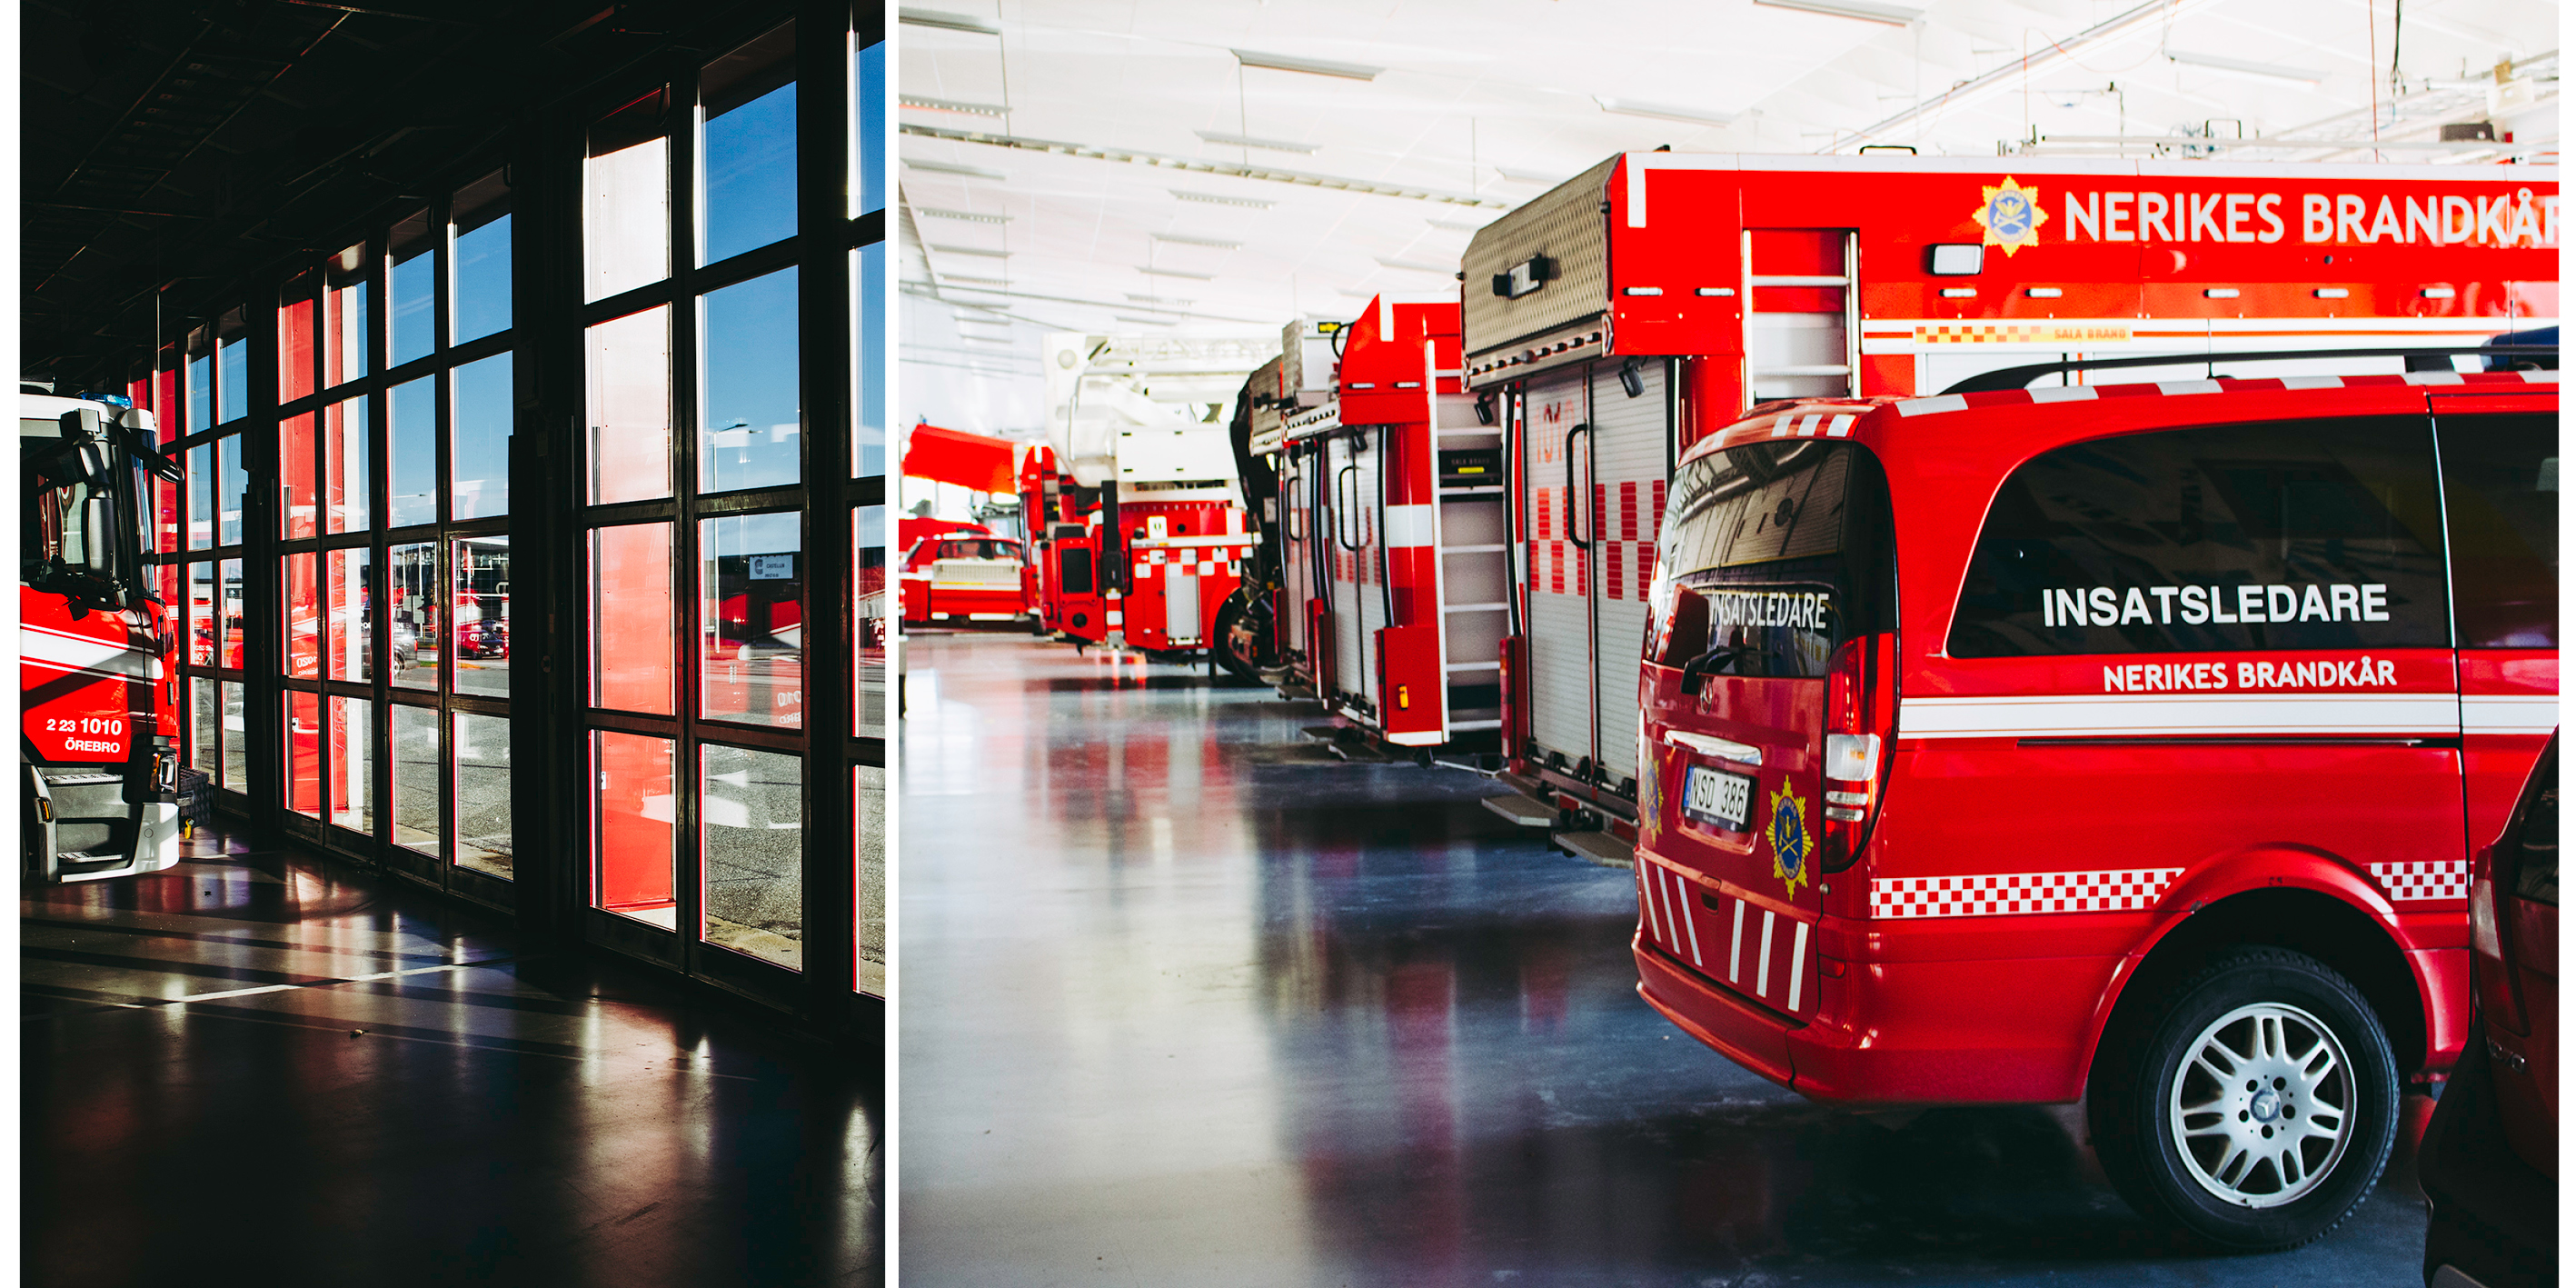 Två bilder. På vänster bild ännu en bild på de nya portarna där bilden är tagen inifrån och ut. På höger bild flera olika brandbilar inne i vagnhallen.